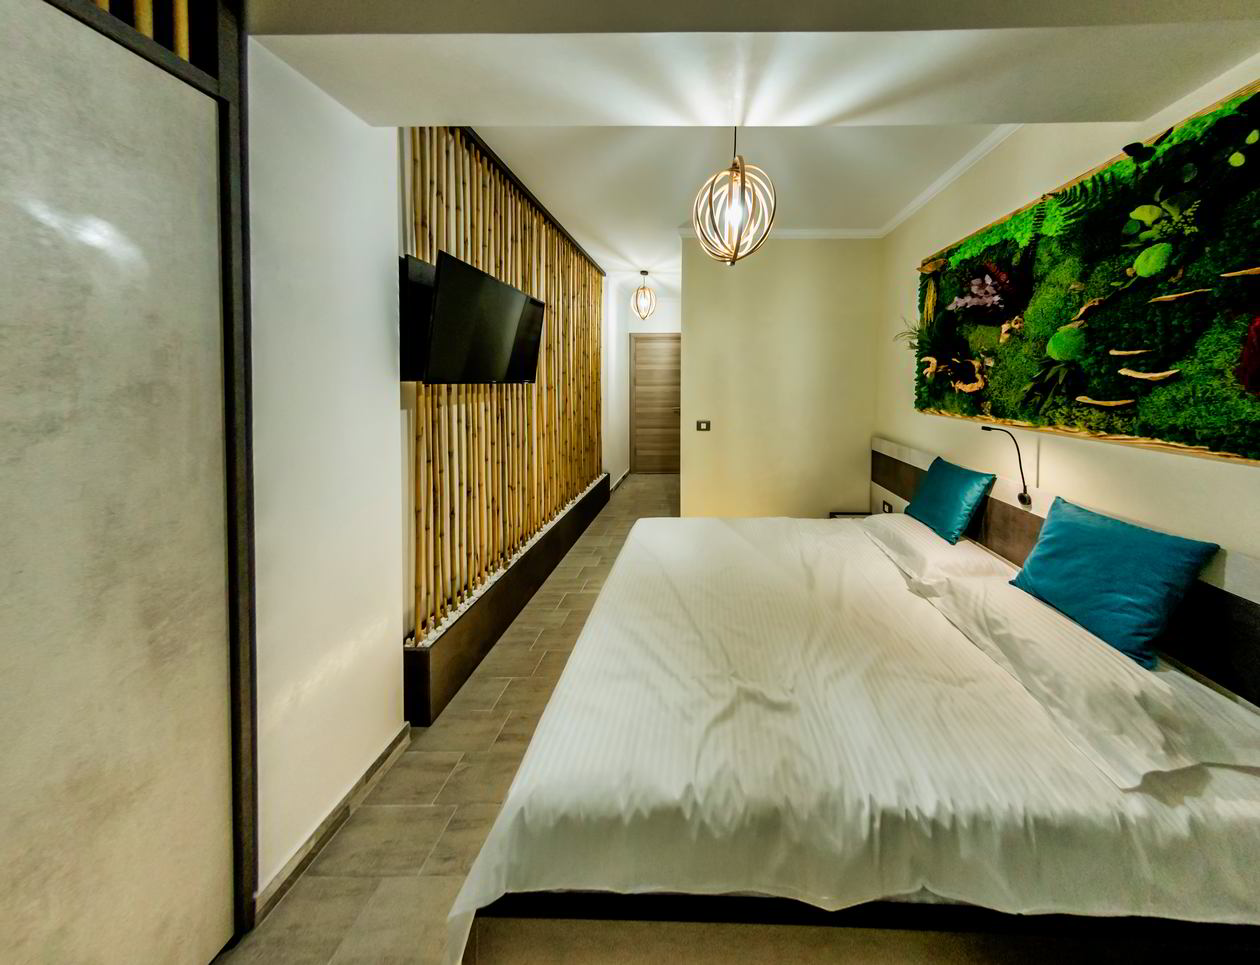 Apartament cu 3 camere, Primul, 65m² utili, pentru inchiriat in regim hotelier in Navodari, Alezzi Infinity Resort & SPA, Mobilat integral, 08 Decembrie 2020 COD.12282